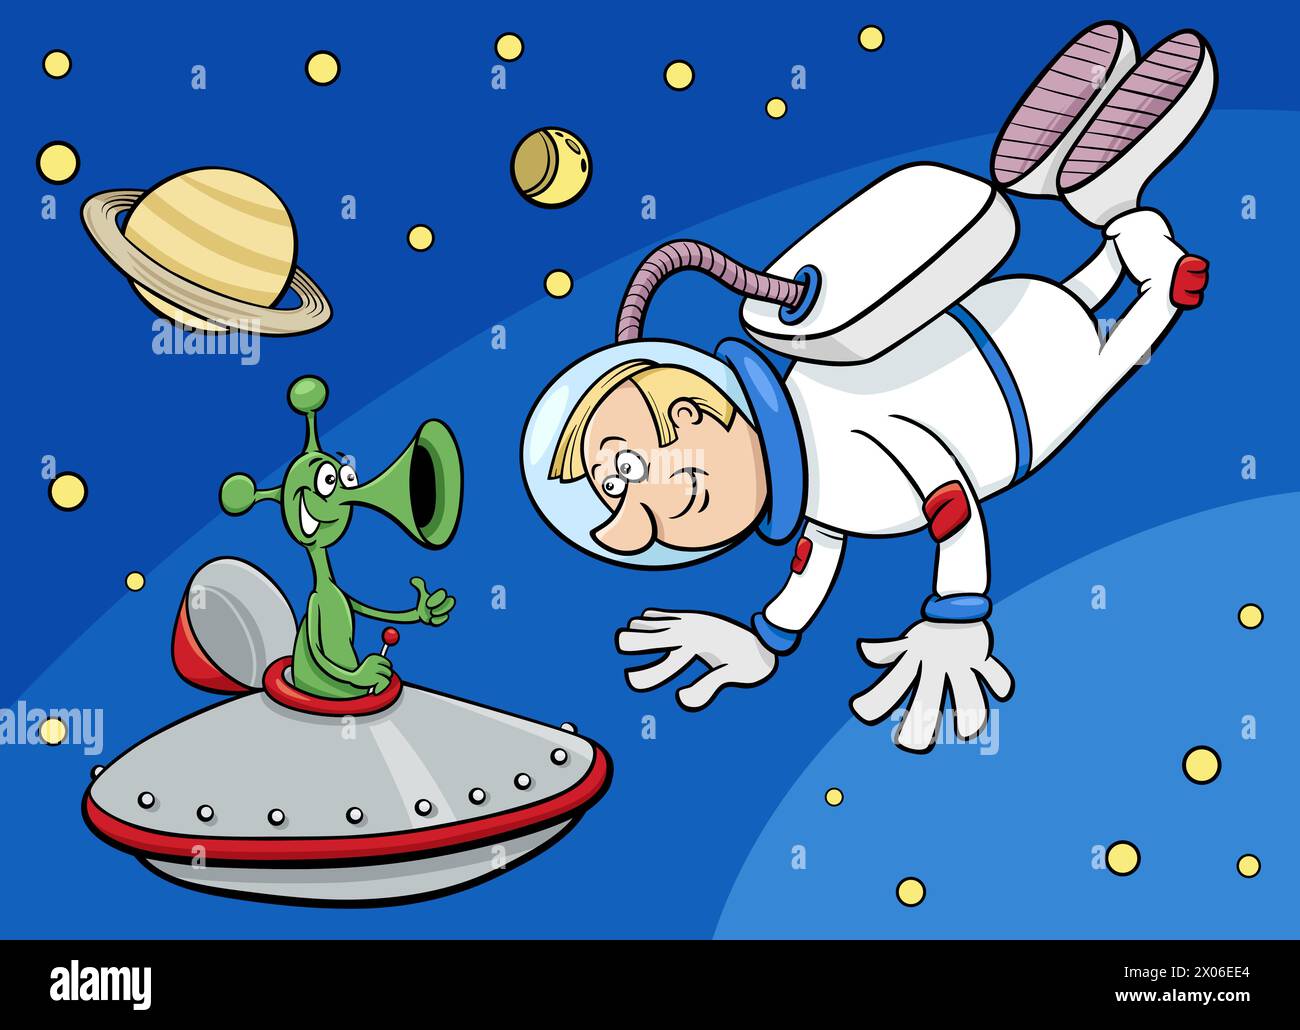 Cartoon-Illustration eines Raumfahrers oder Astronauten mit Alien im Weltraum Stock Vektor